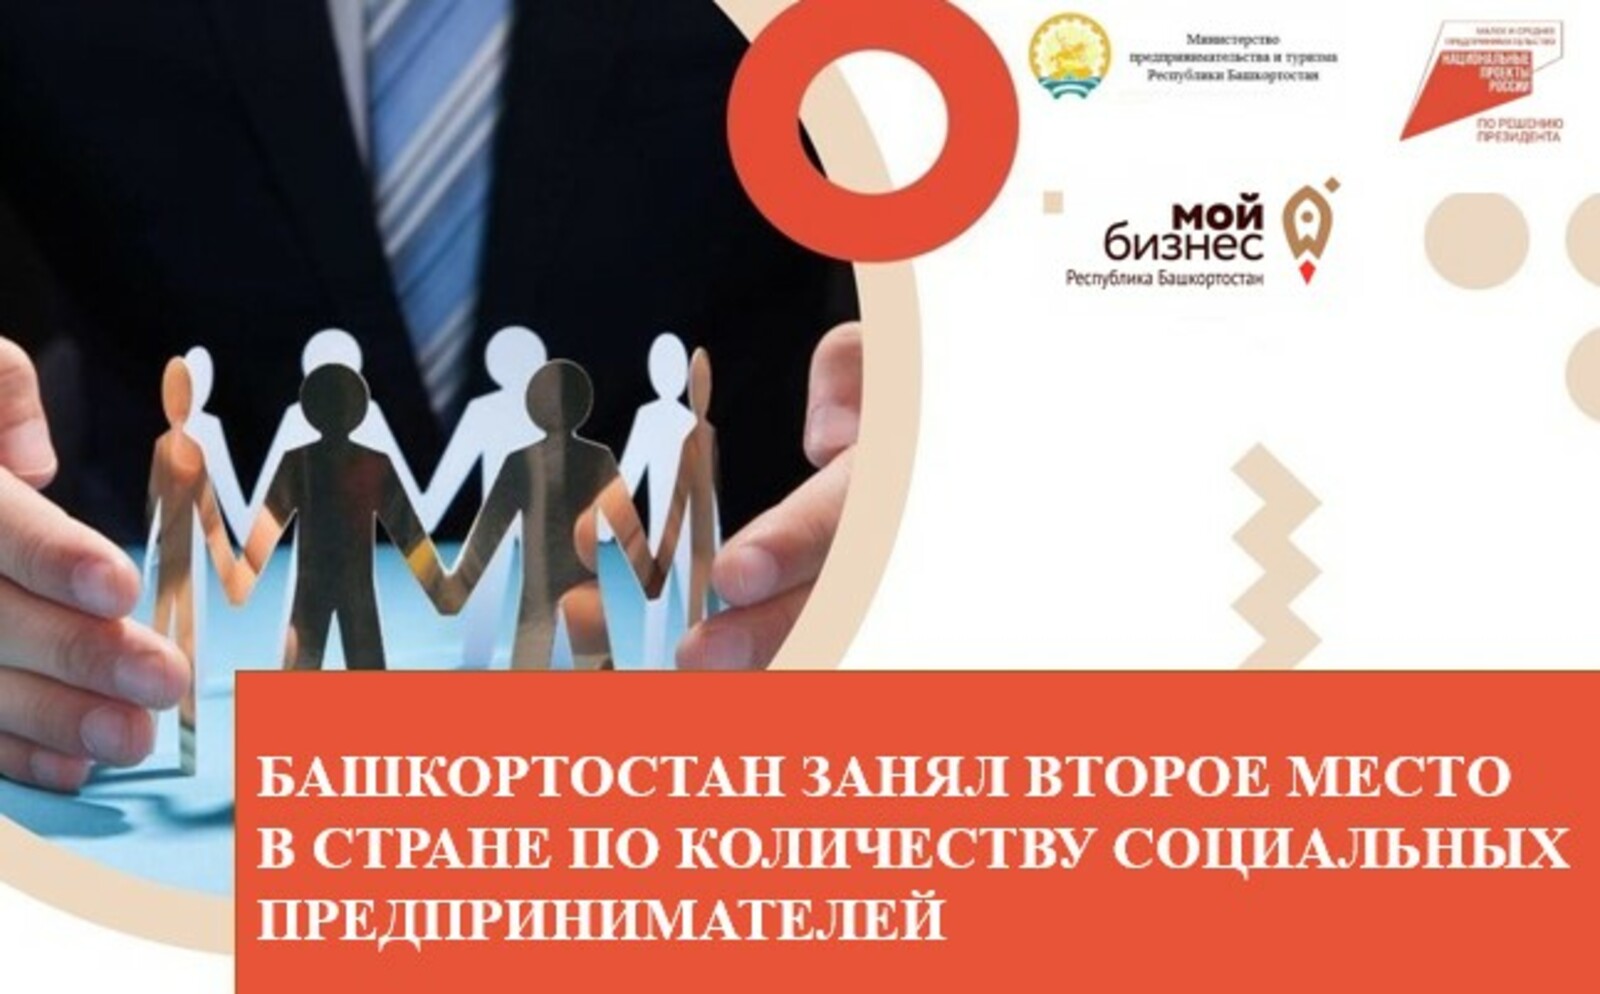 Башкортостан занял второе место в стране по количеству социальных предпринимателей